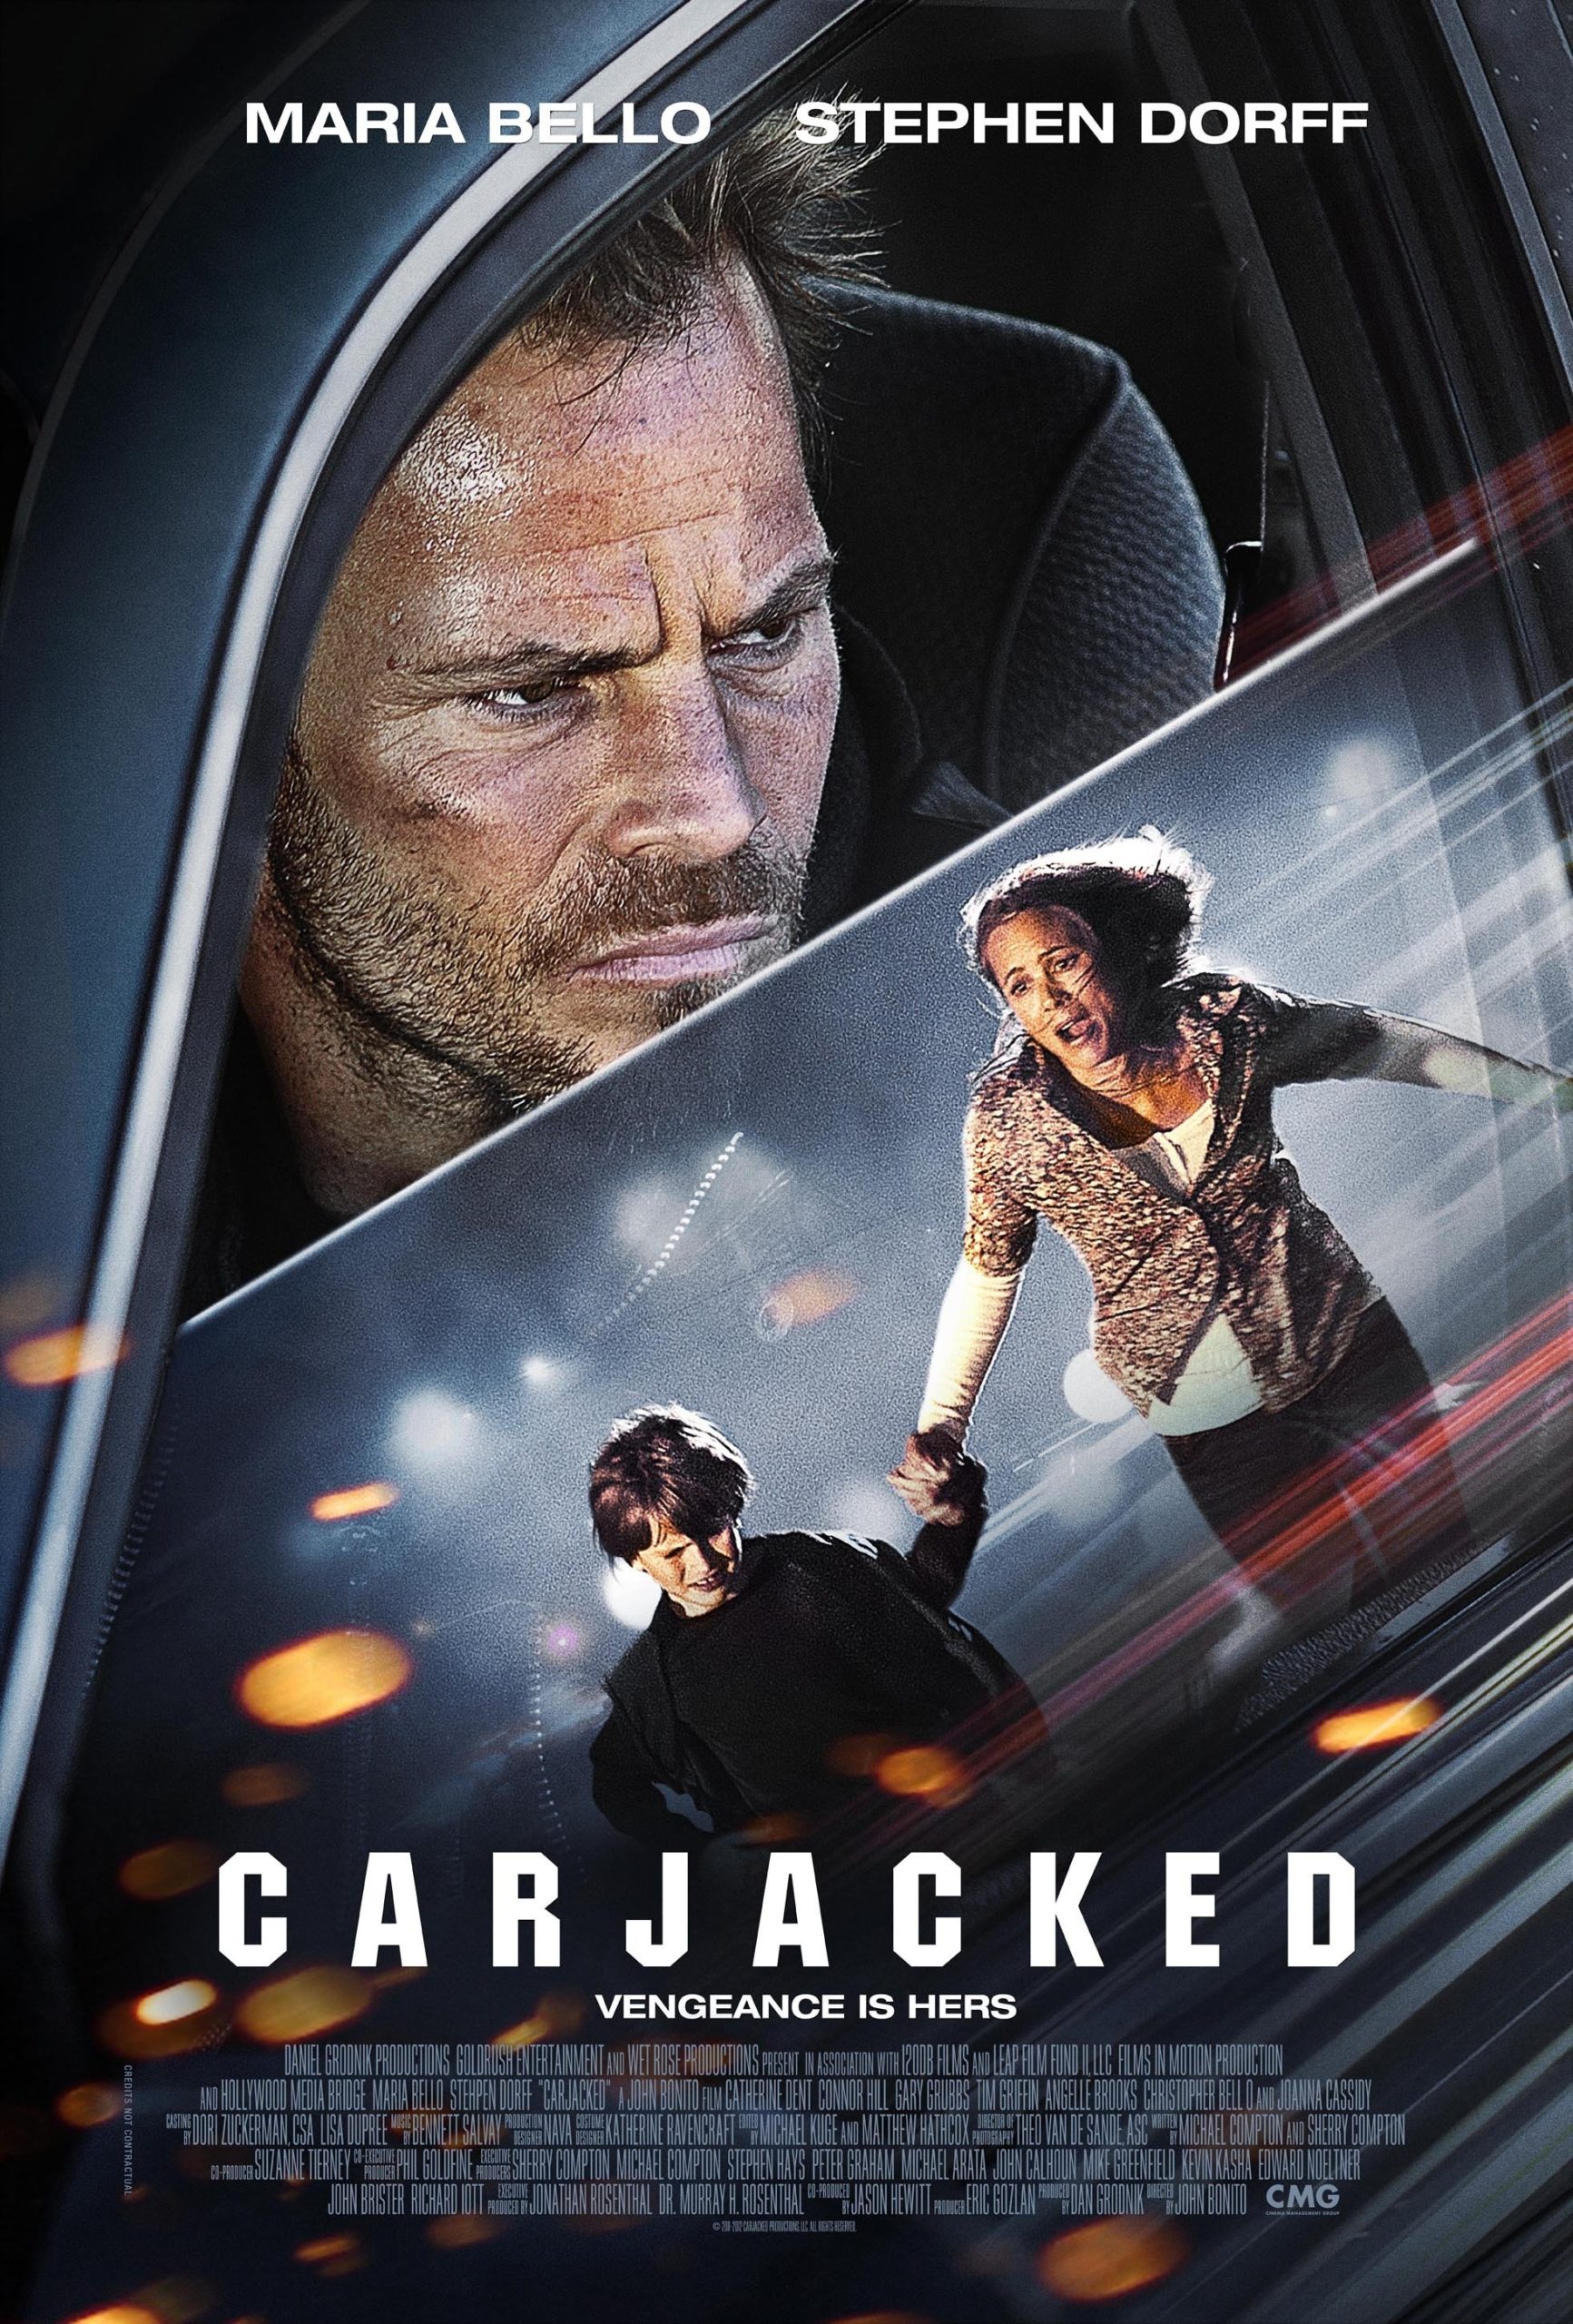 Carjacked (2011) ภัยแปลกหน้า ล่าสุดระทึก Maria Bello